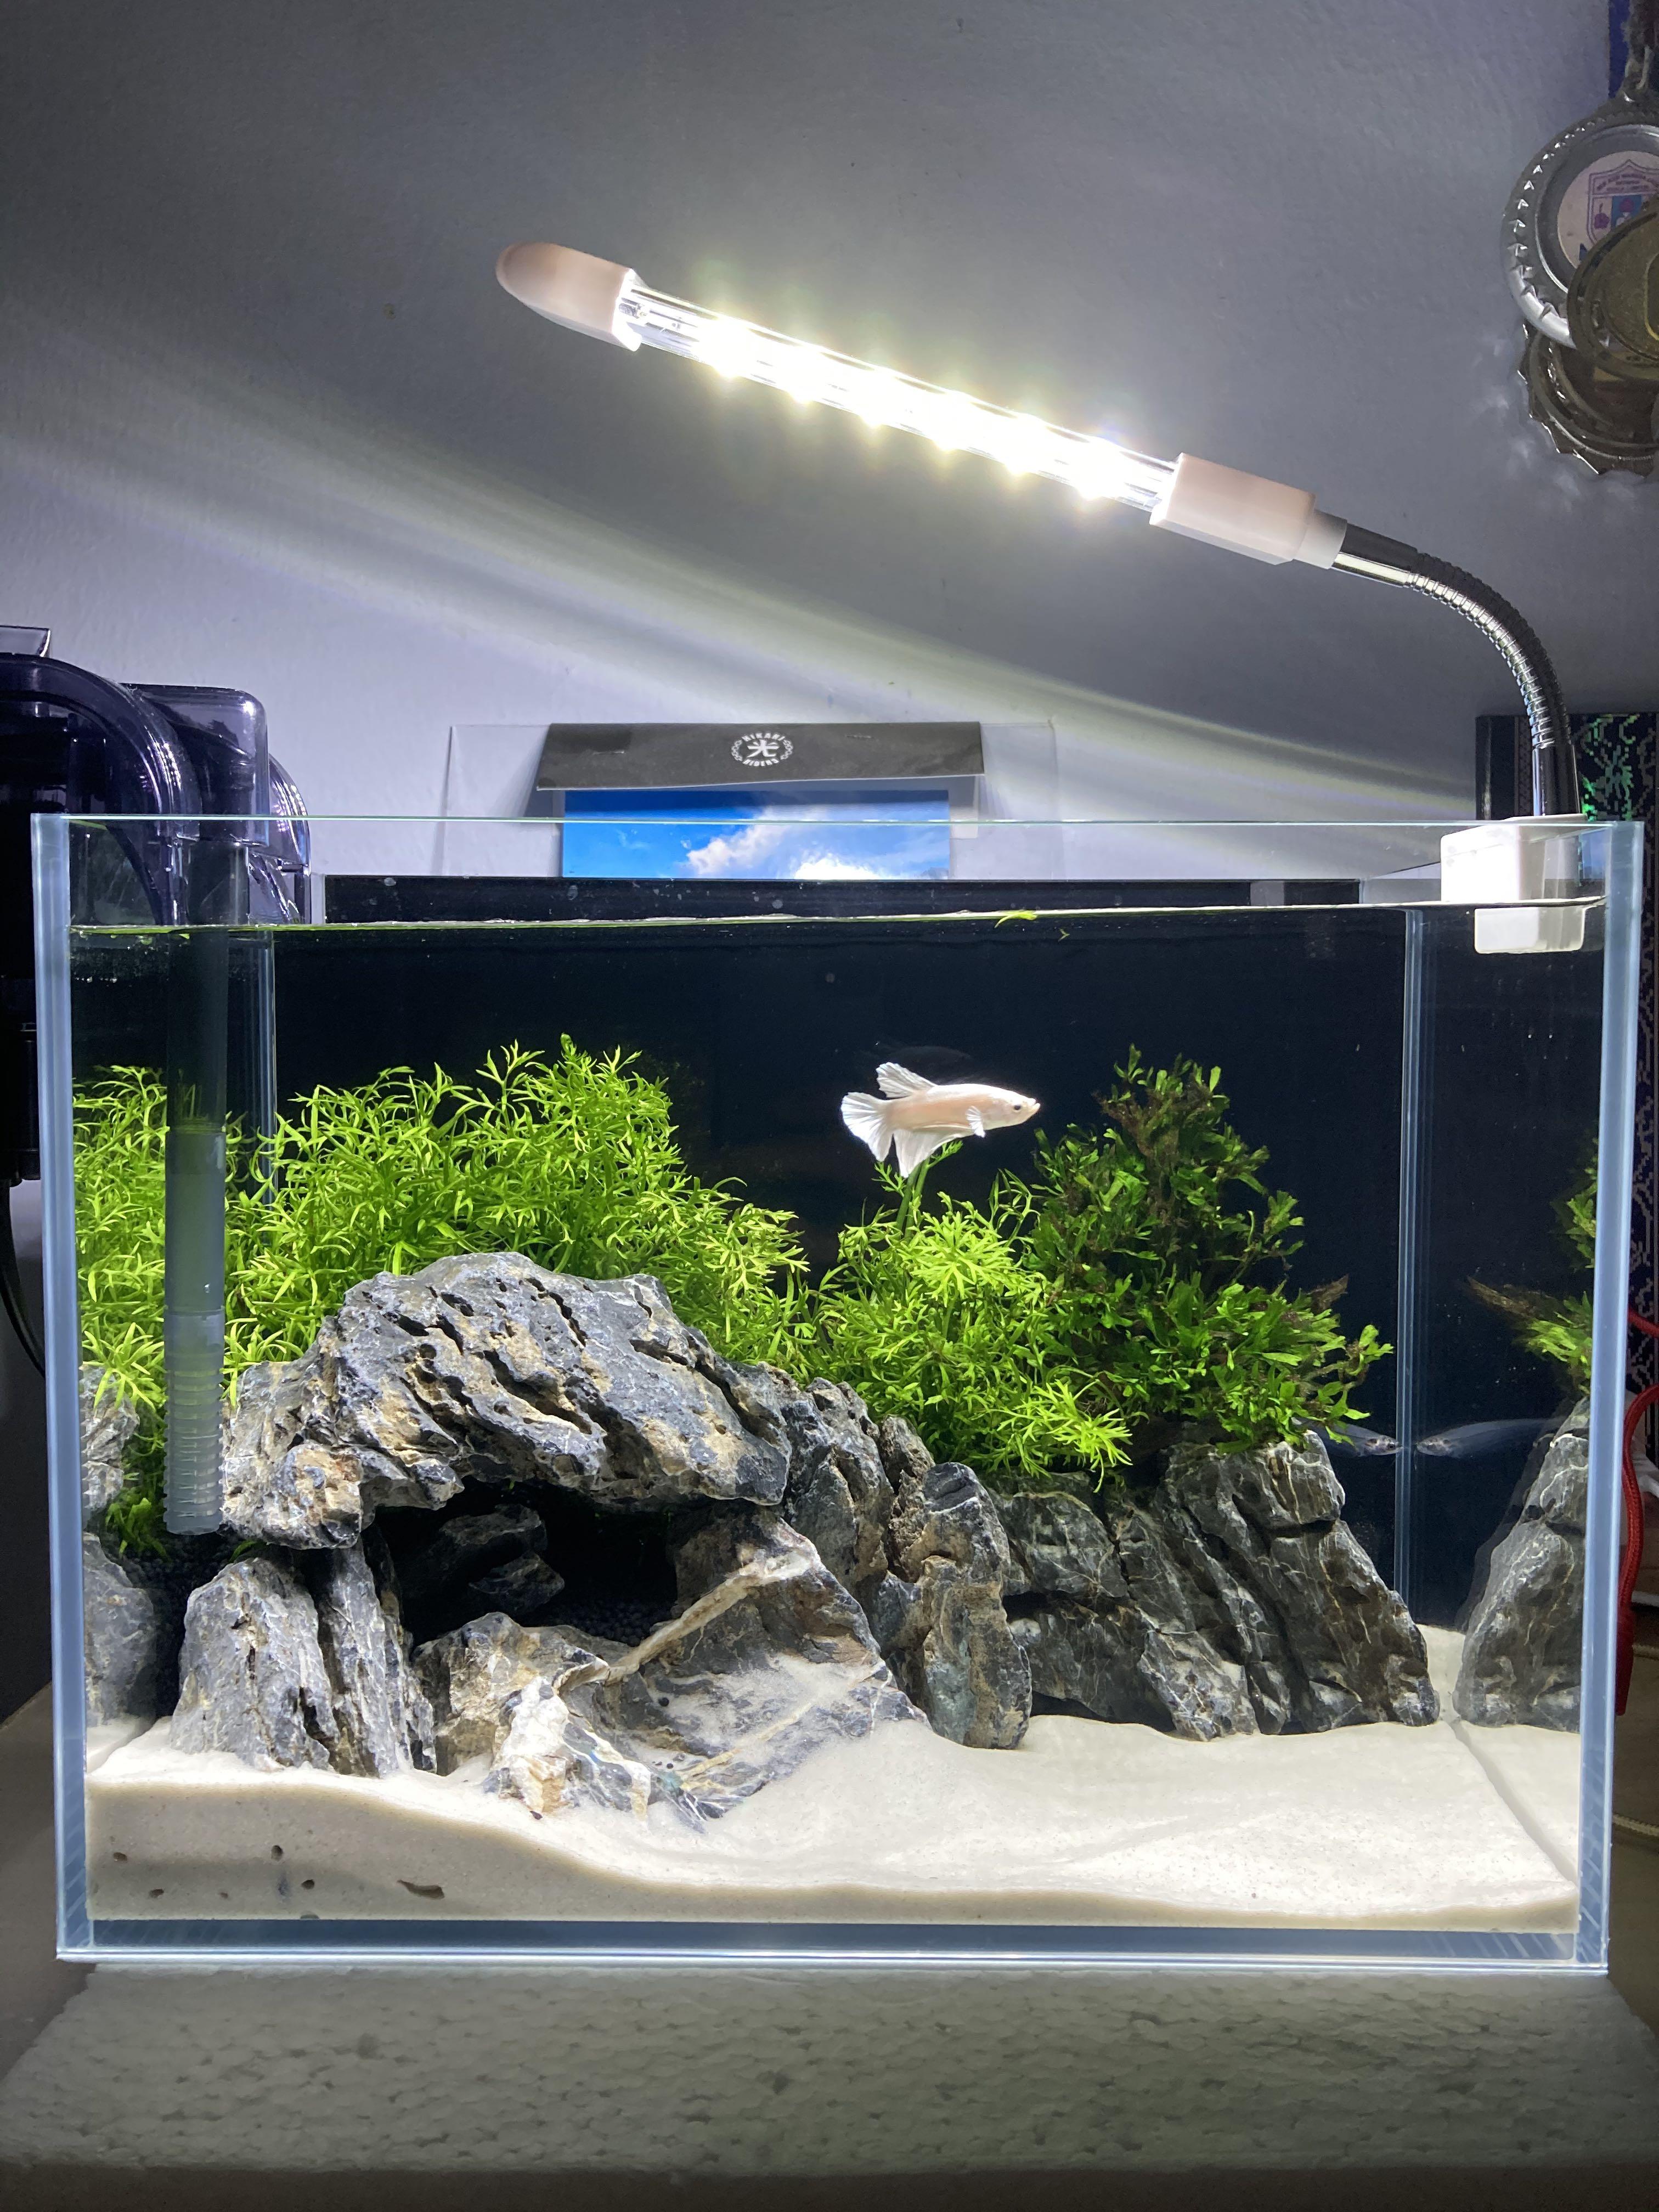 Aquascape Minimalist aquarium, Pet Supplies, Homes & Other Pet